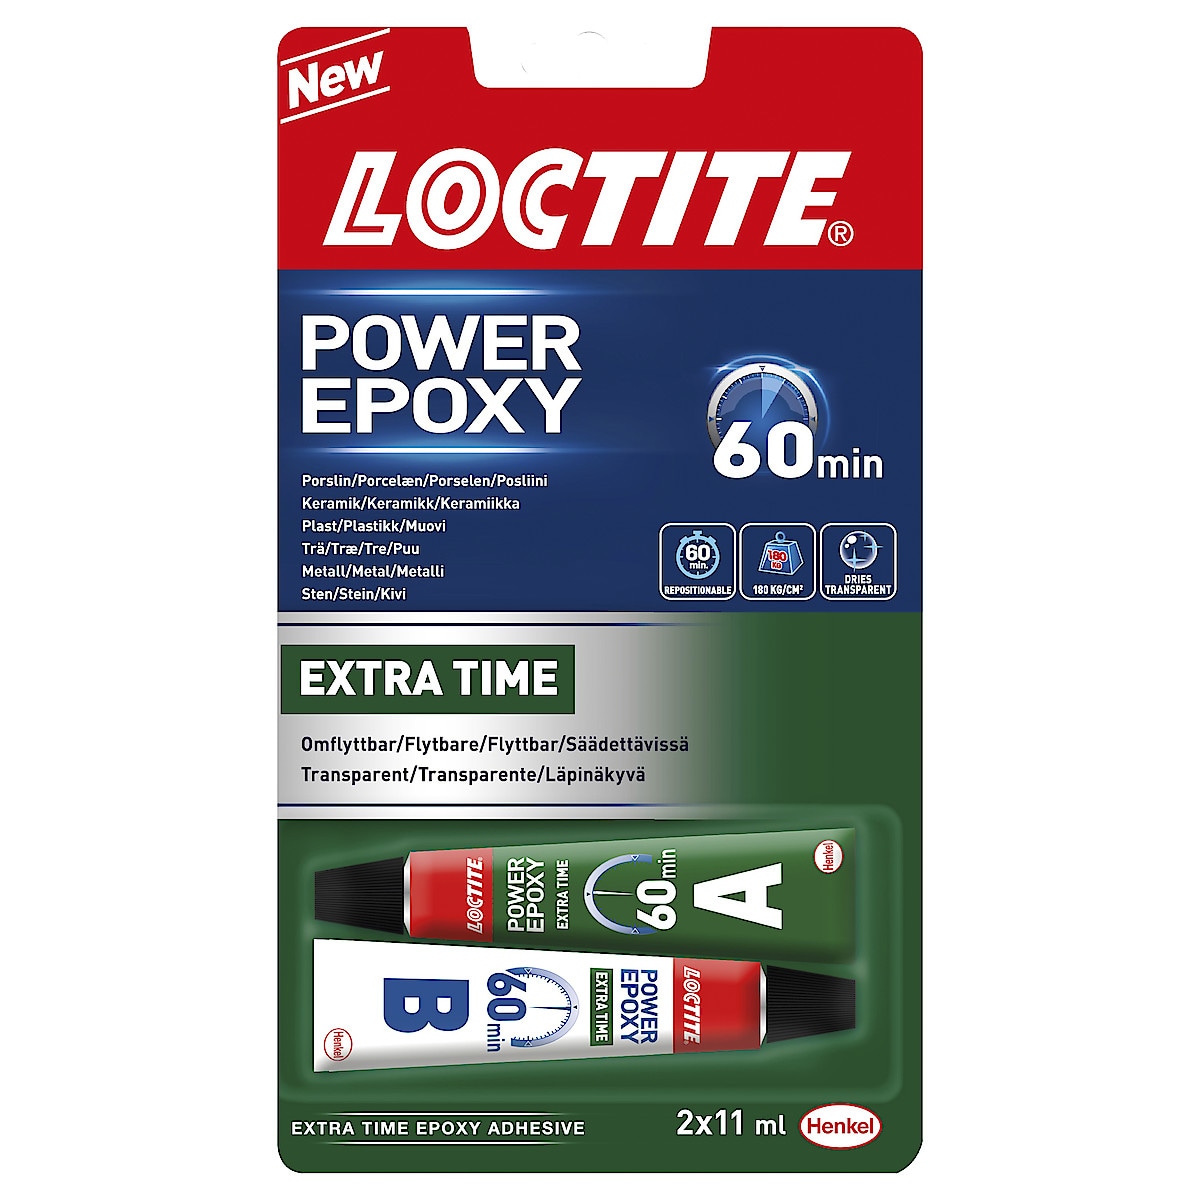 Power Epoxy Loctite